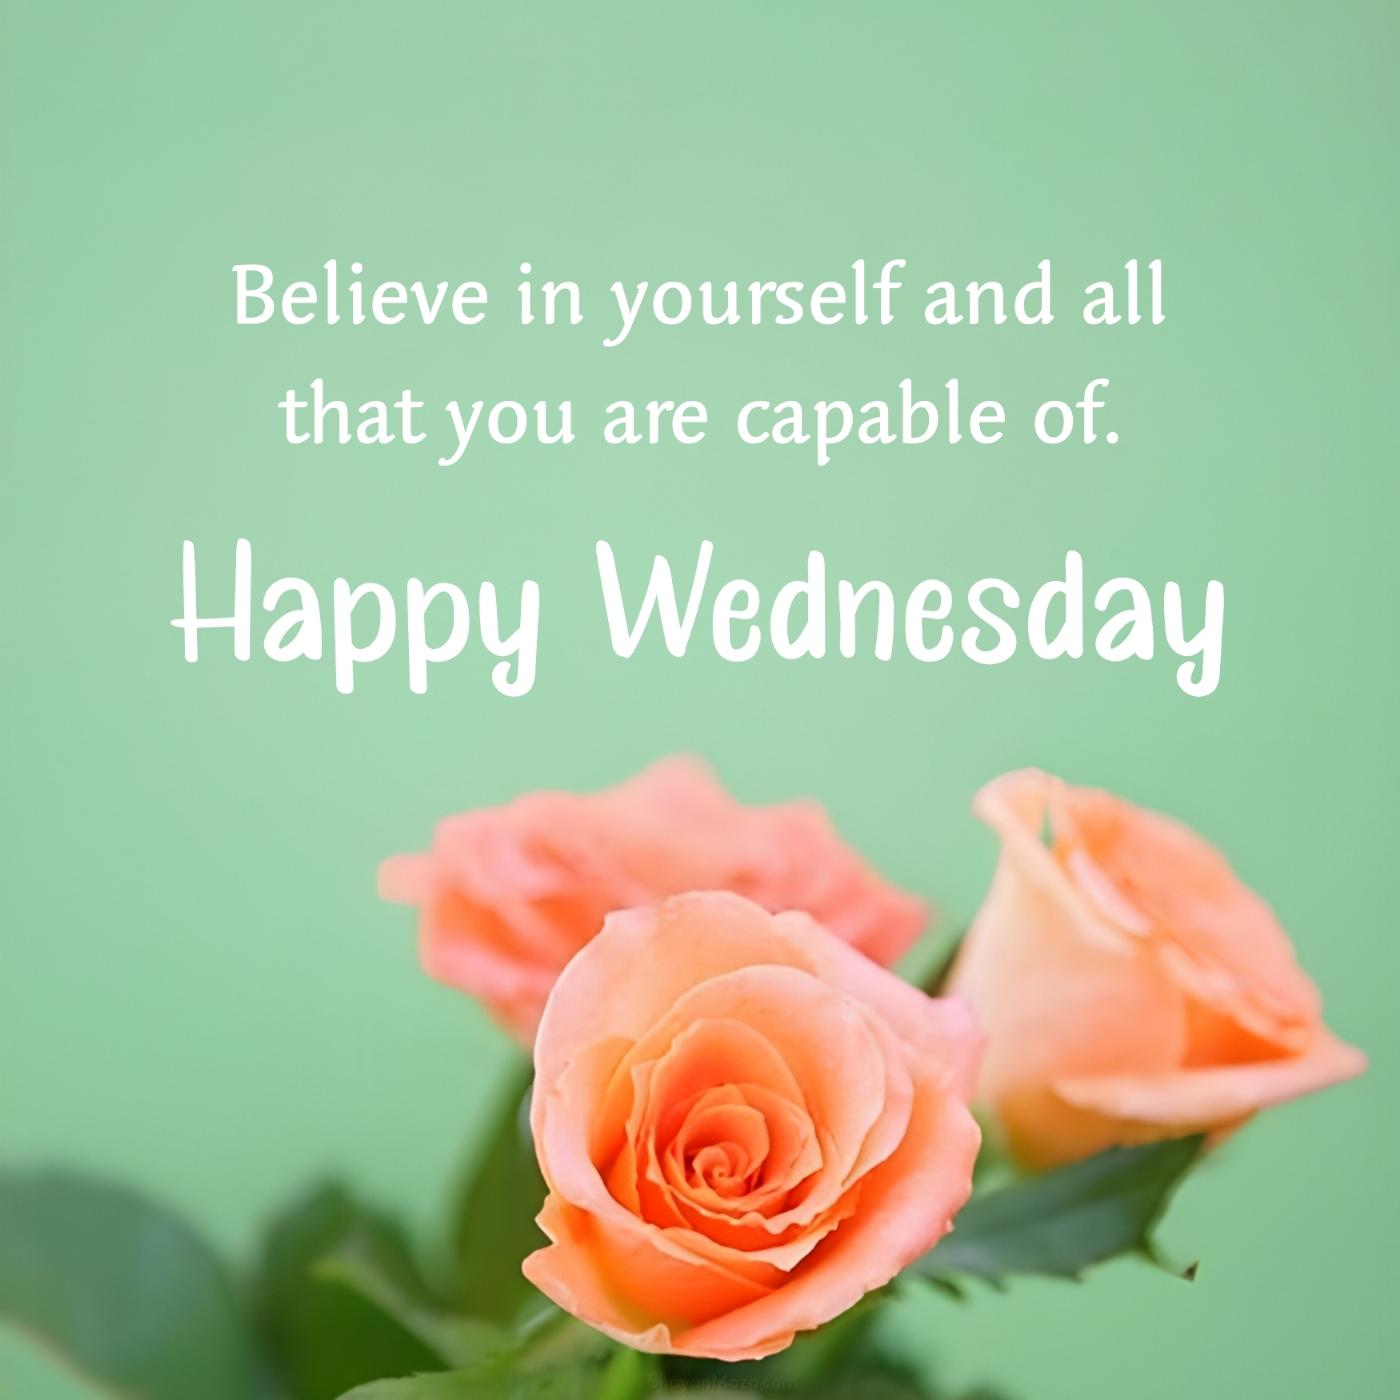 Happy Wednesday! Believe in yourself